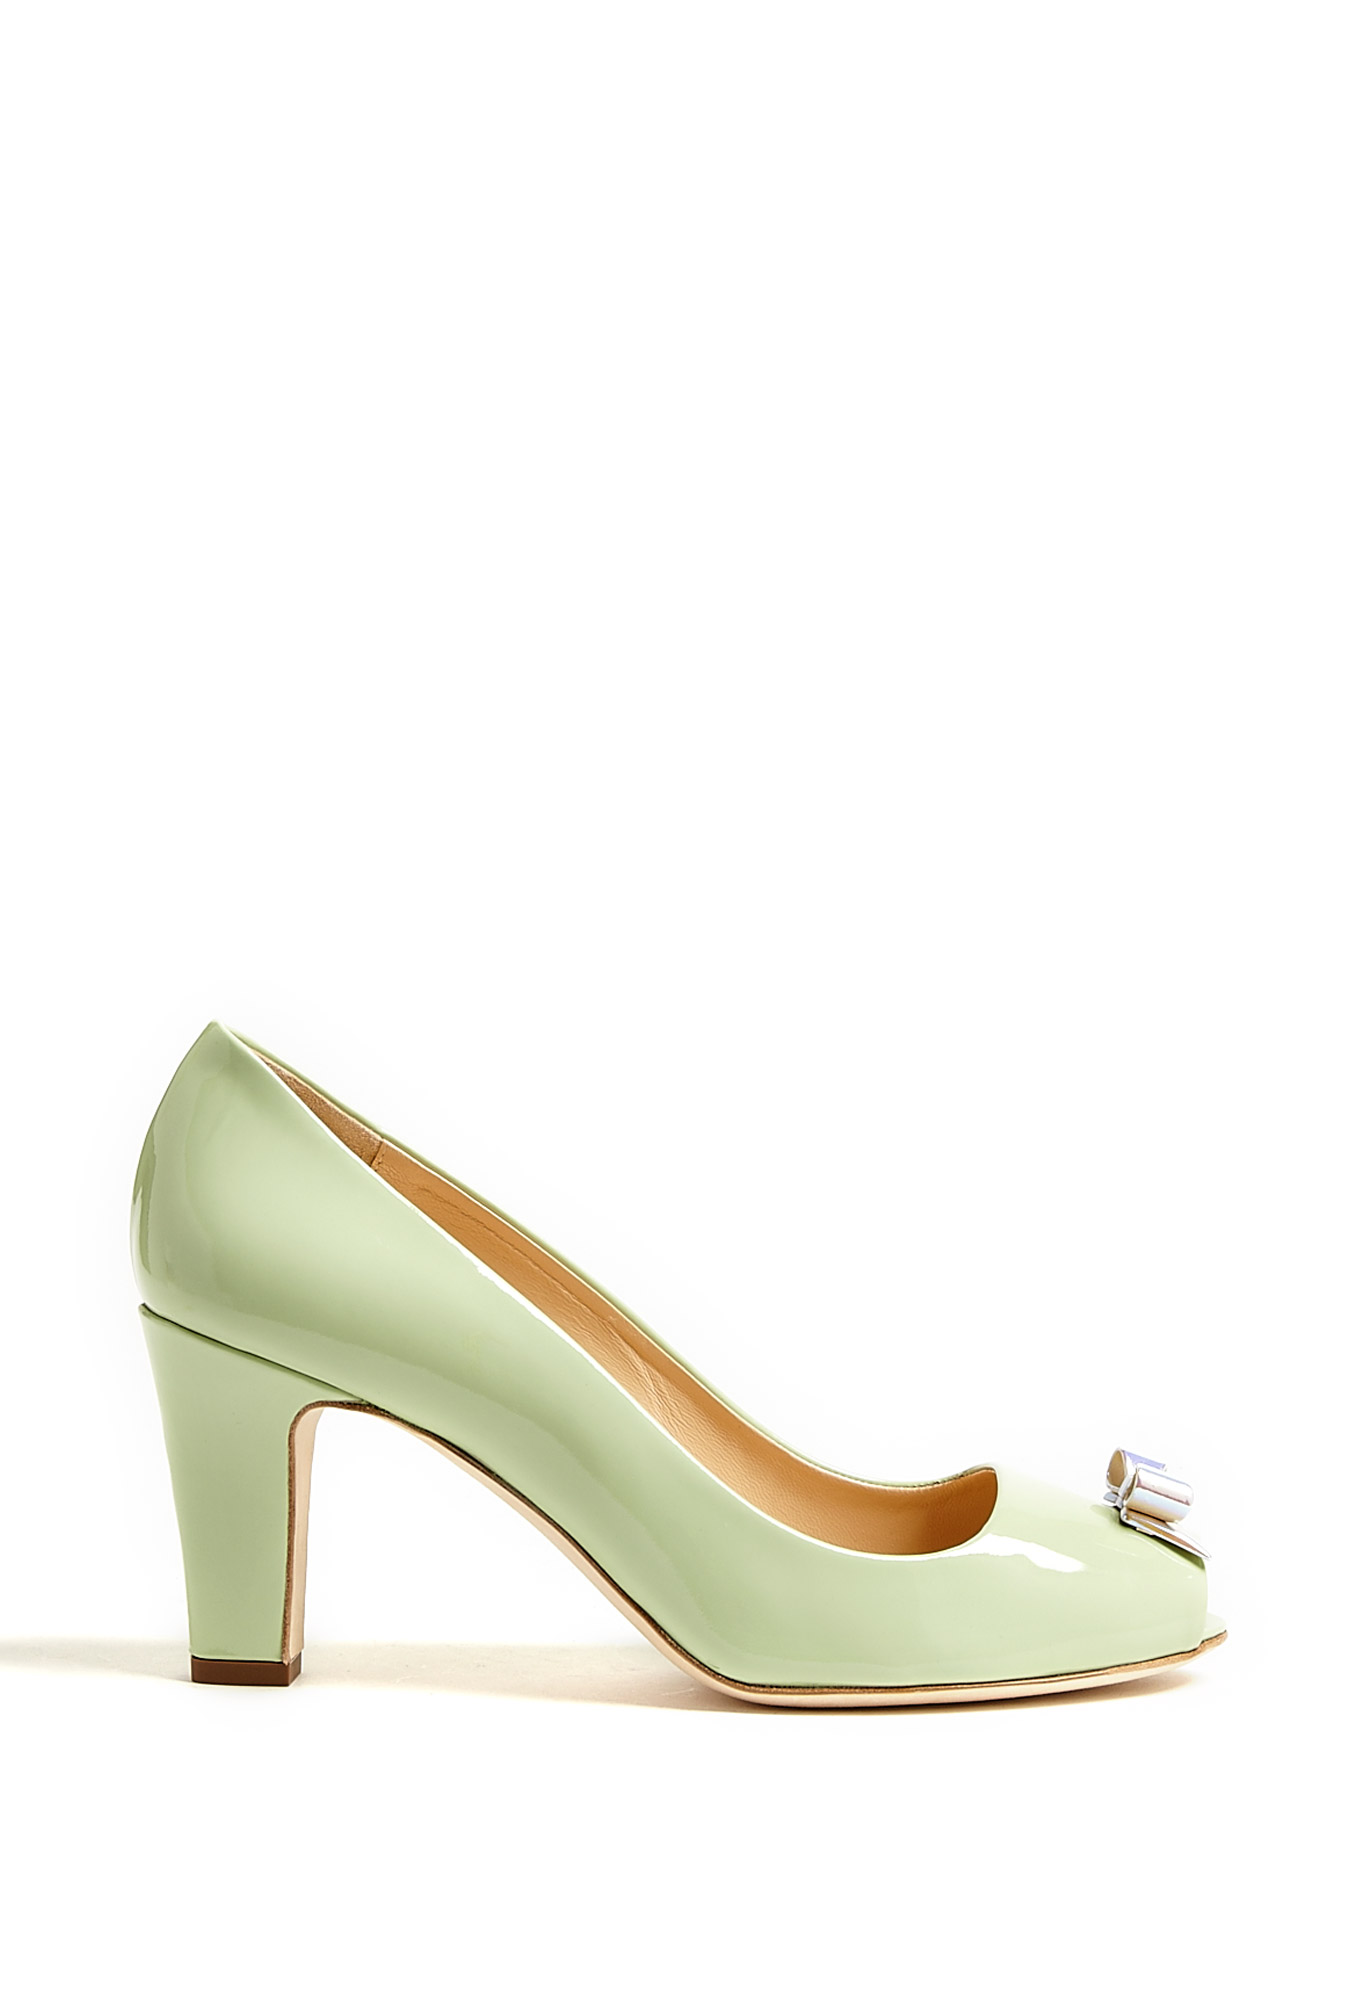 green heels cheap